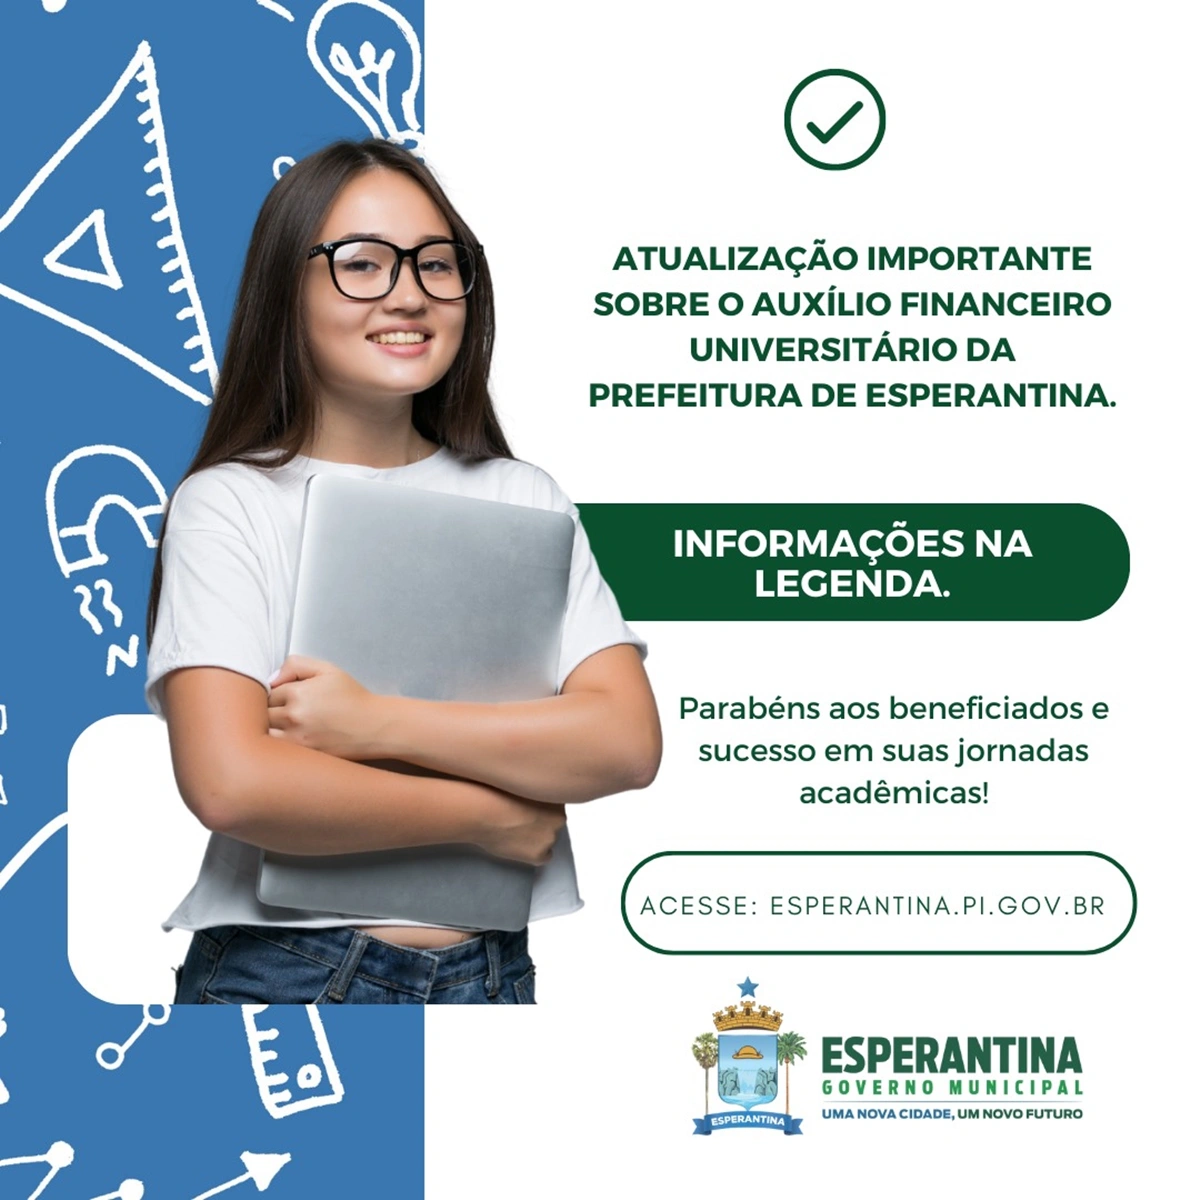 Prefeitura de Esperantina atualiza alunos sobre Auxílio Financeiro Universitário